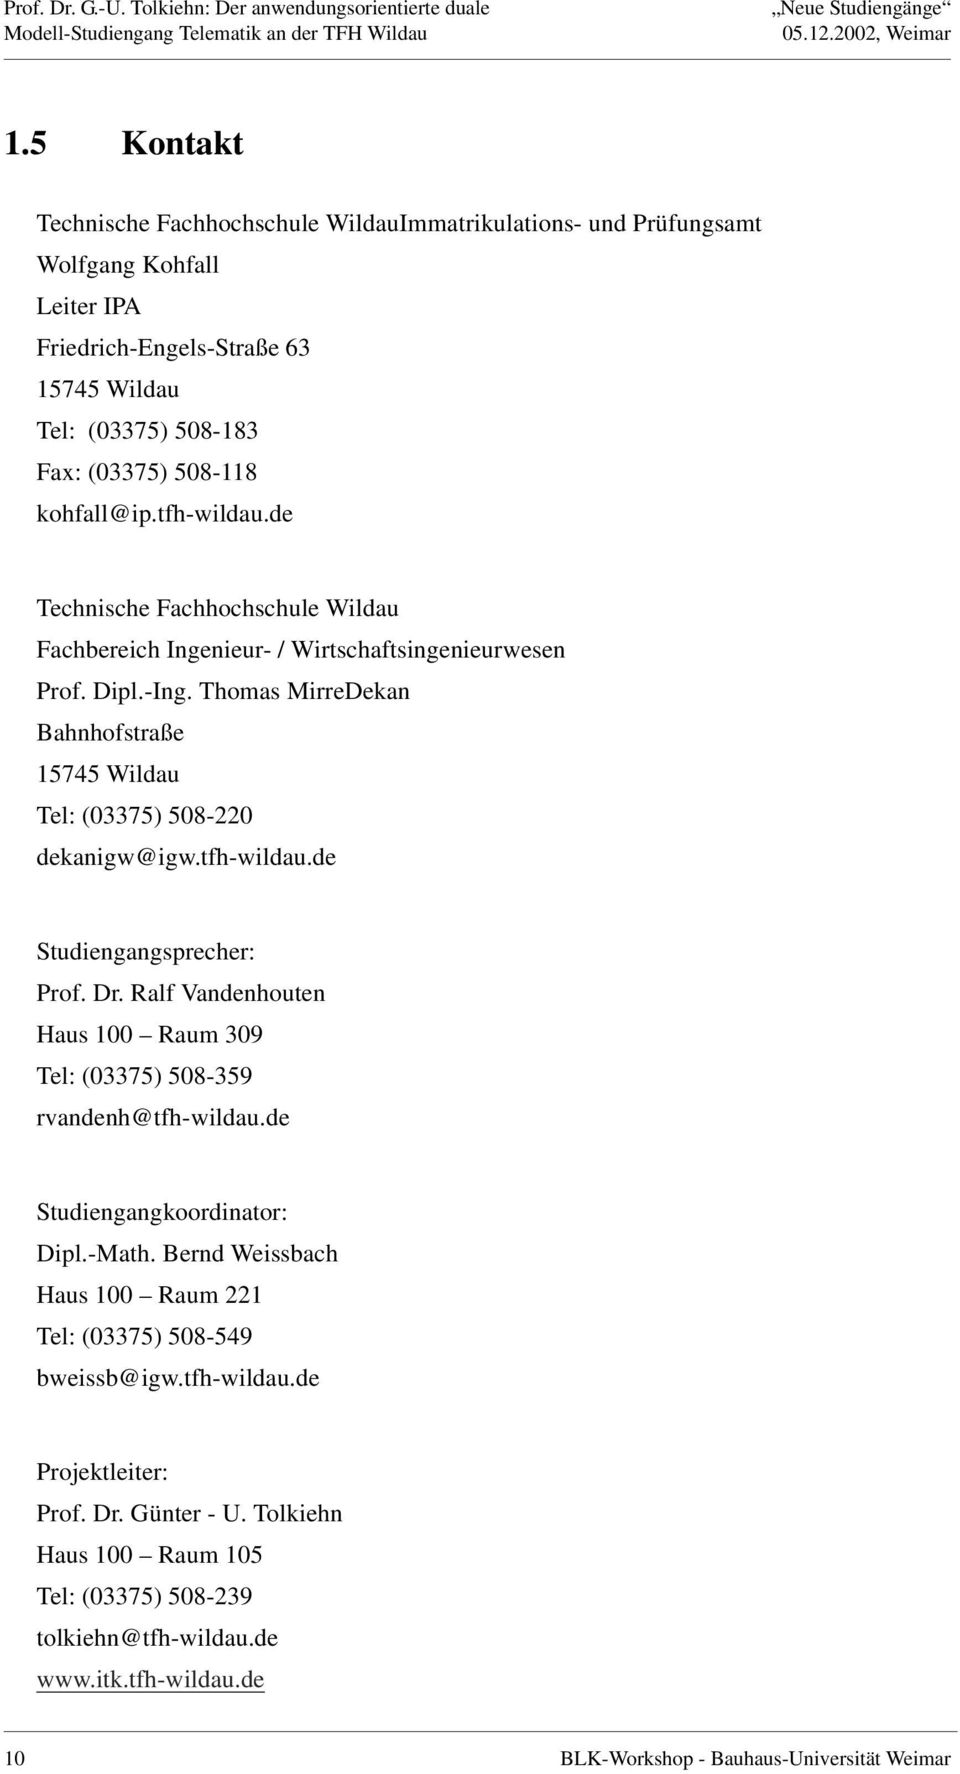 tfh-wildau.de Technische Fachhochschule Wildau Fachbereich Ingenieur- / Wirtschaftsingenieurwesen Prof. Dipl.-Ing. Thomas MirreDekan Bahnhofstraße 15745 Wildau Tel: (03375) 508-220 dekanigw@igw.